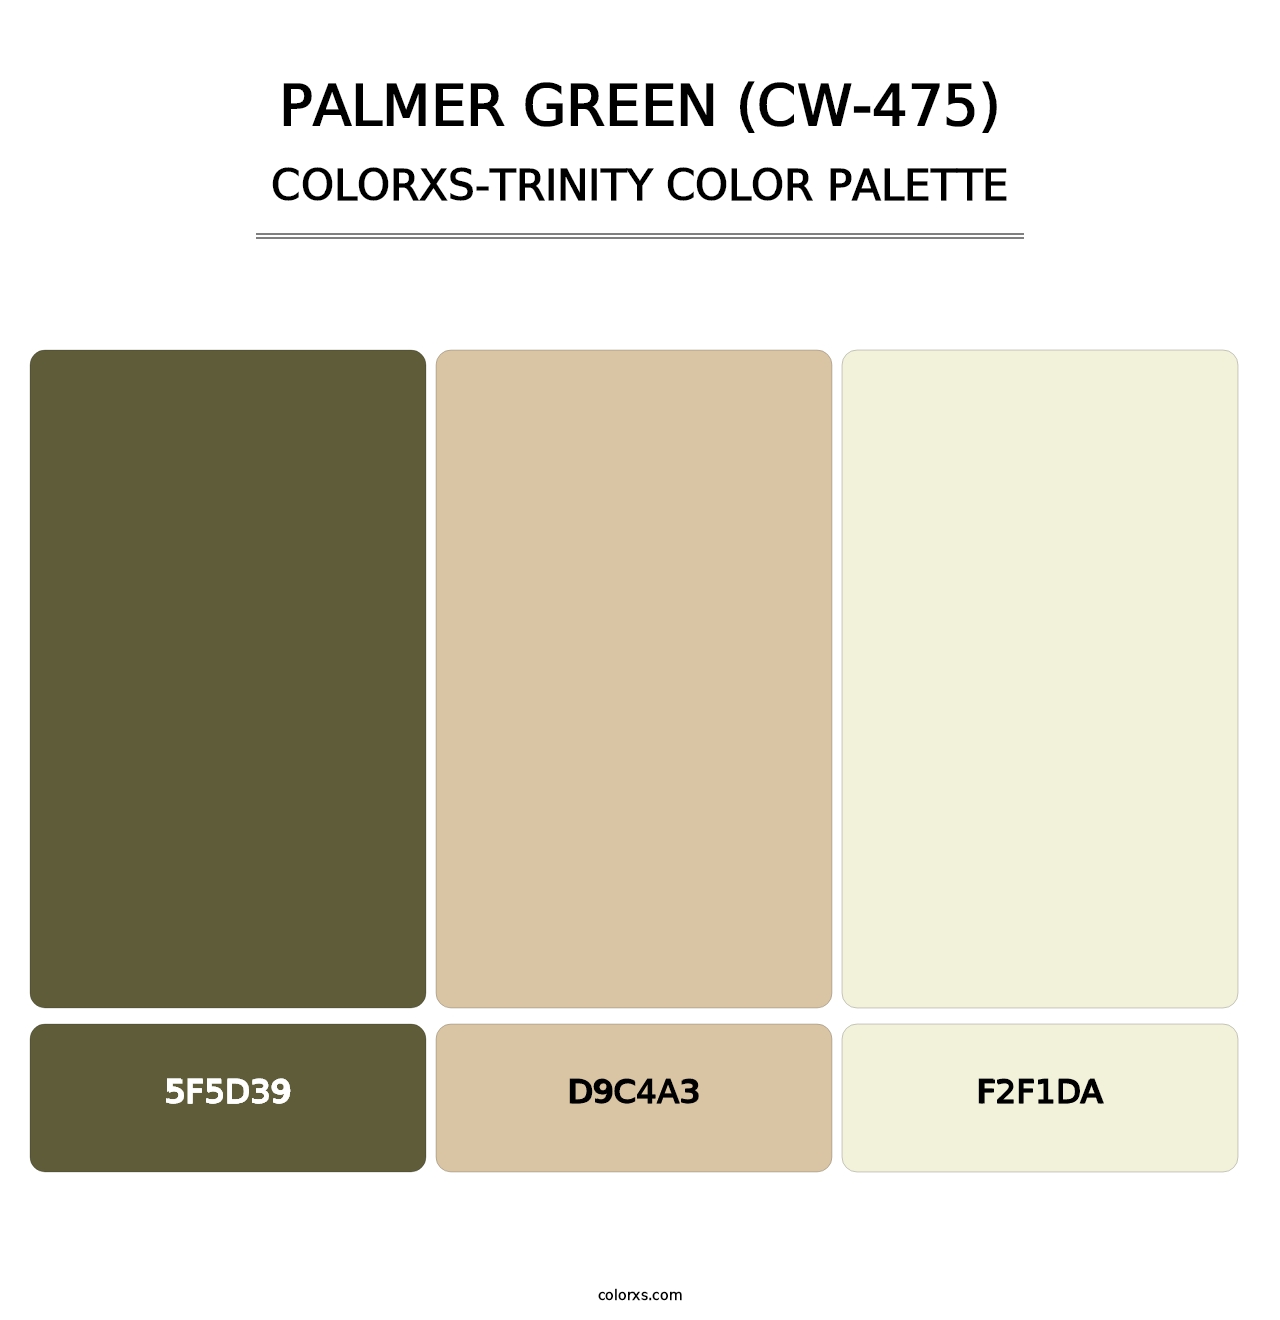 Palmer Green (CW-475) - Colorxs Trinity Palette